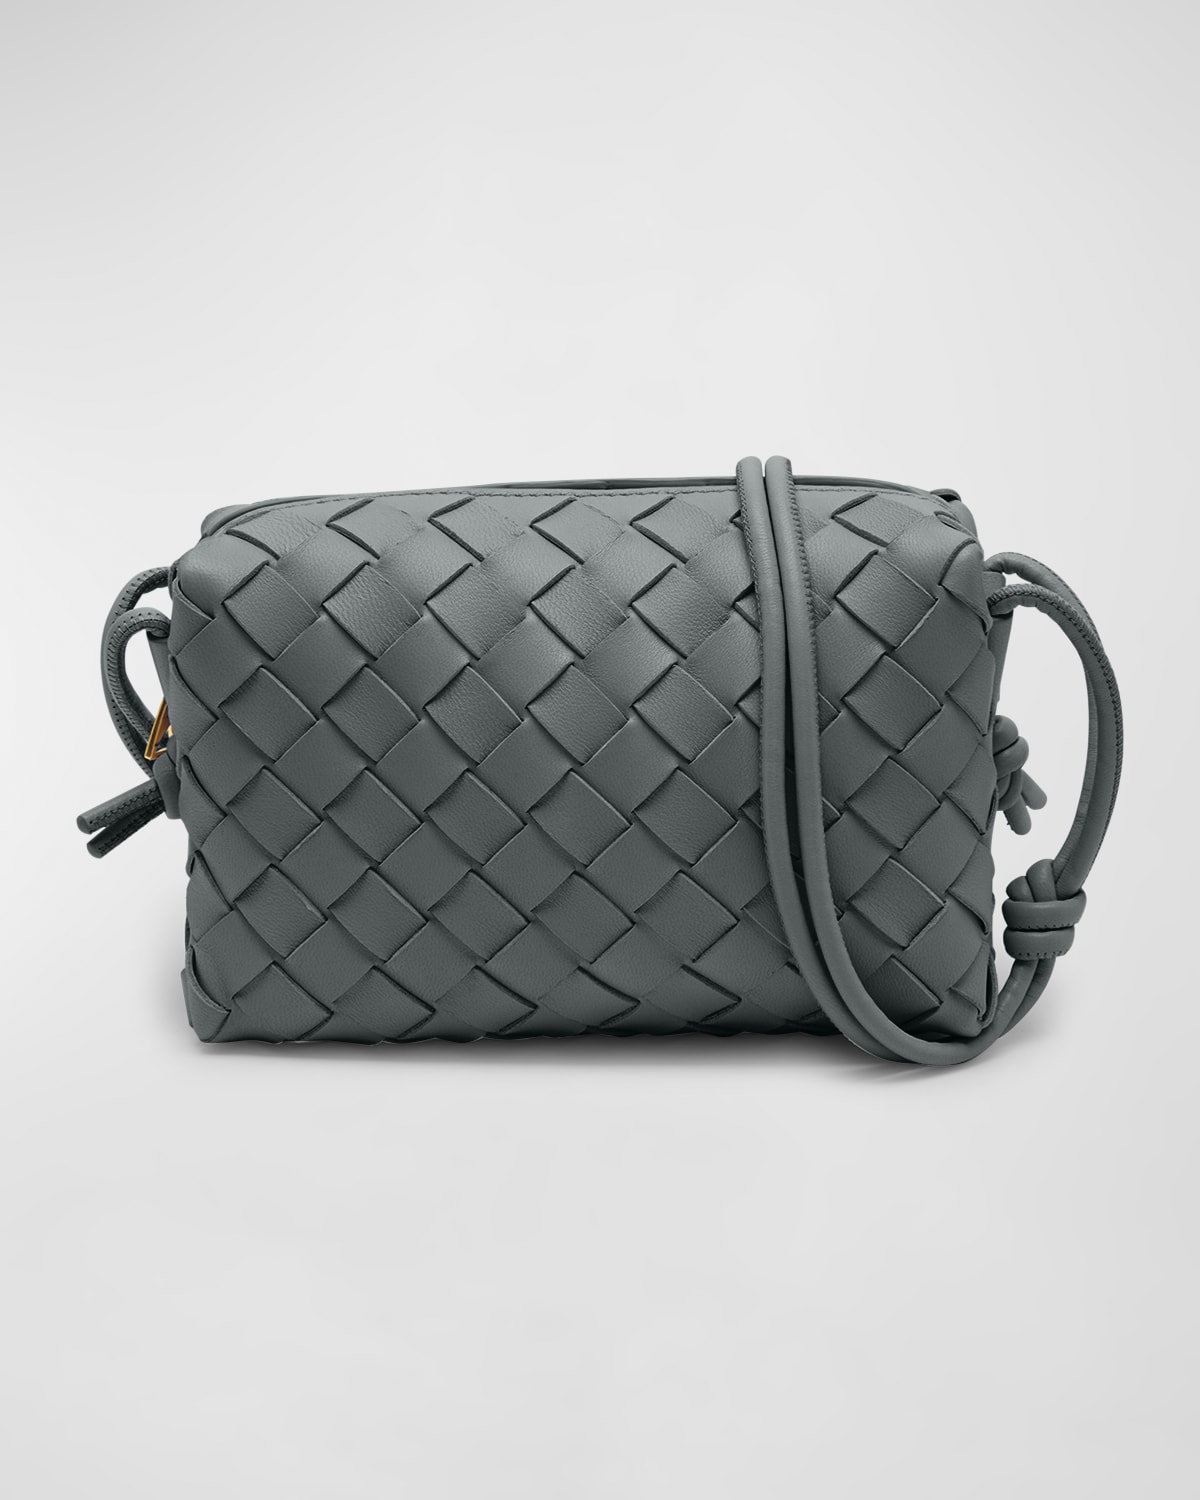 Bottega Veneta Mini Intrecciato Leather Crossbody Bag in 2916 Travertine-Gold